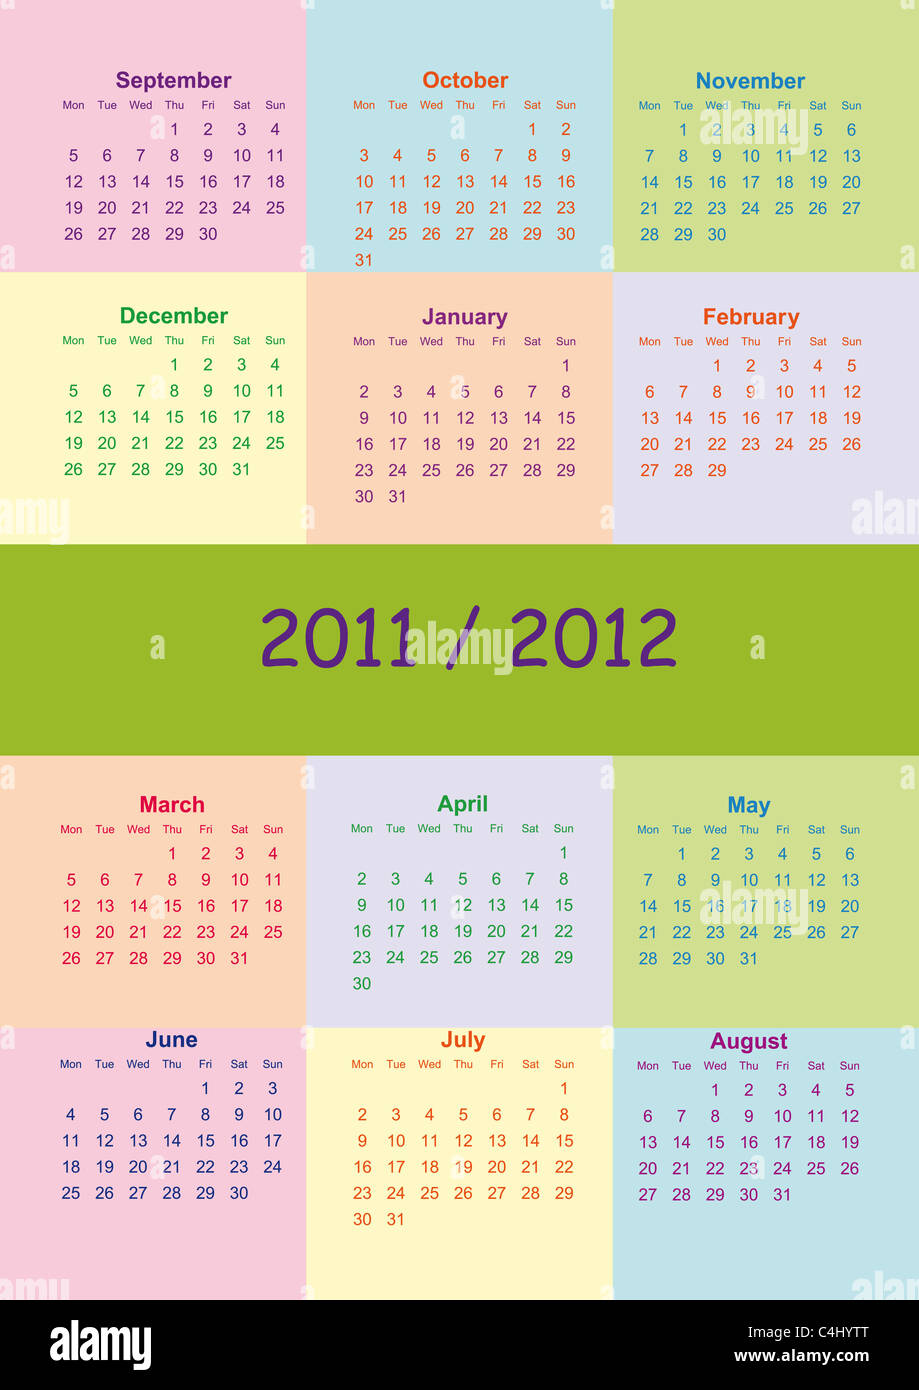 Calendrier scolaire colorés sur nouvelle année scolaire de 2011 à 2012 Année  Photo Stock - Alamy